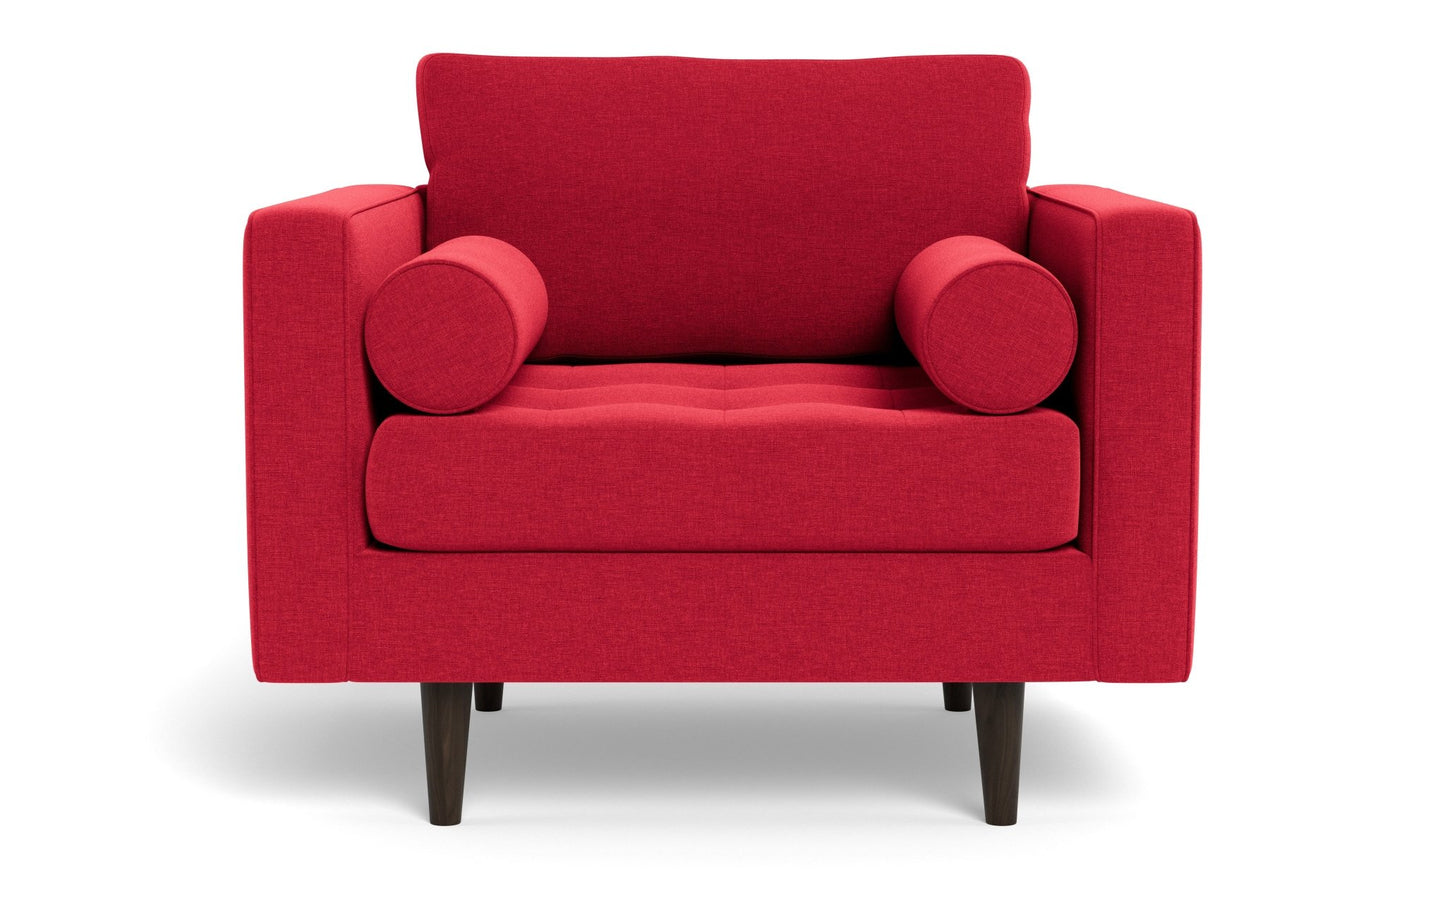 Ladybird Arm Chair - Bennett Red